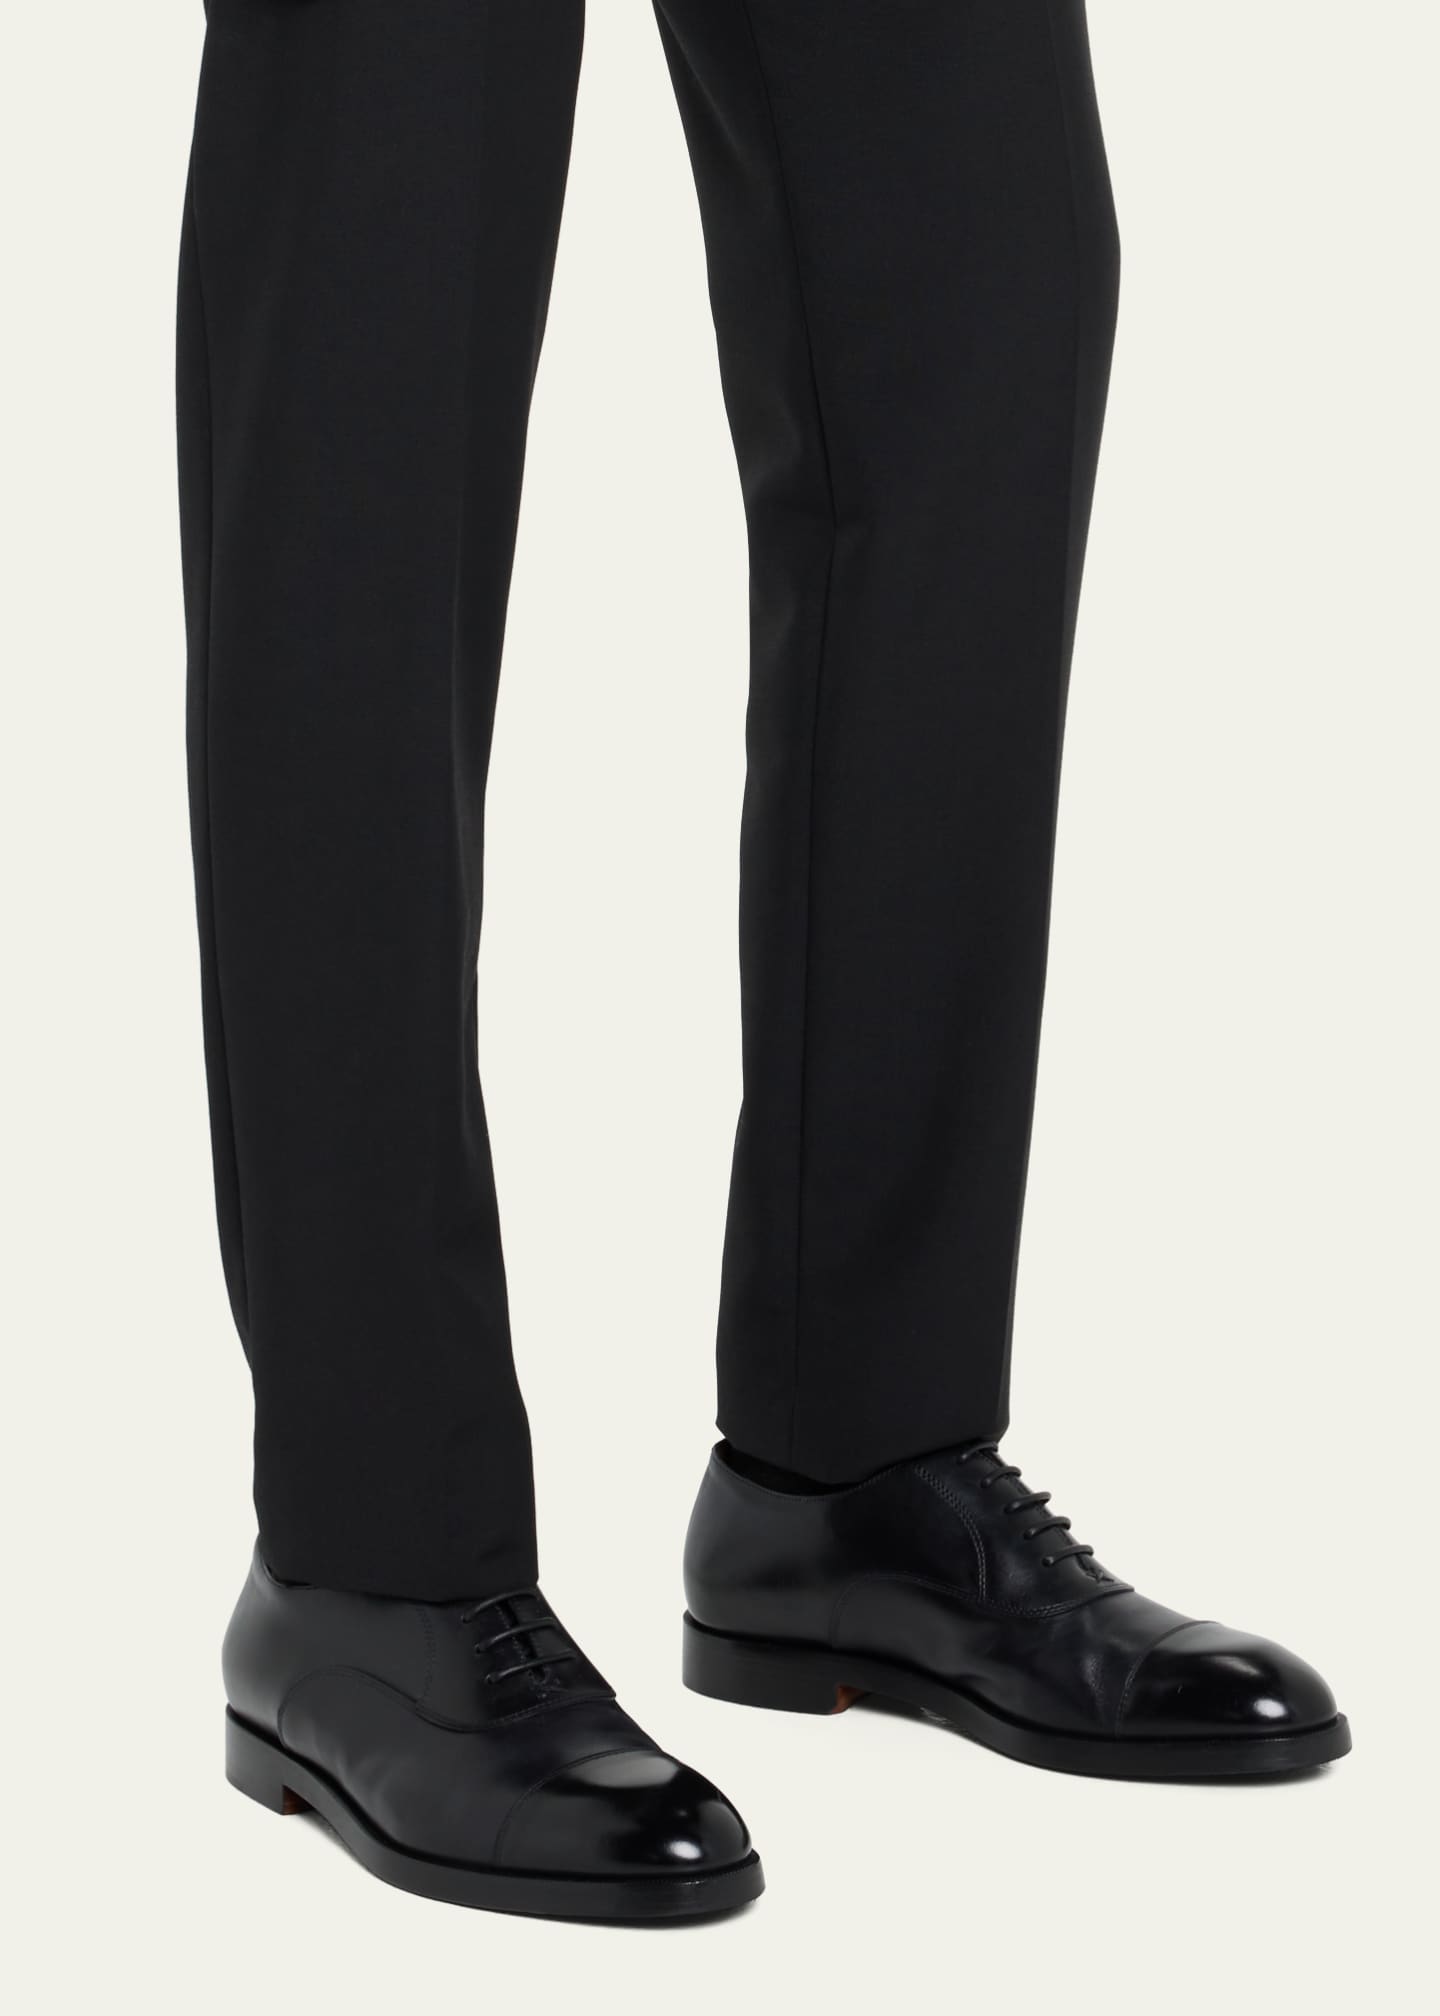 ZEGNA Men's Torino Cap Toe Leather Oxfords - Bergdorf Goodman